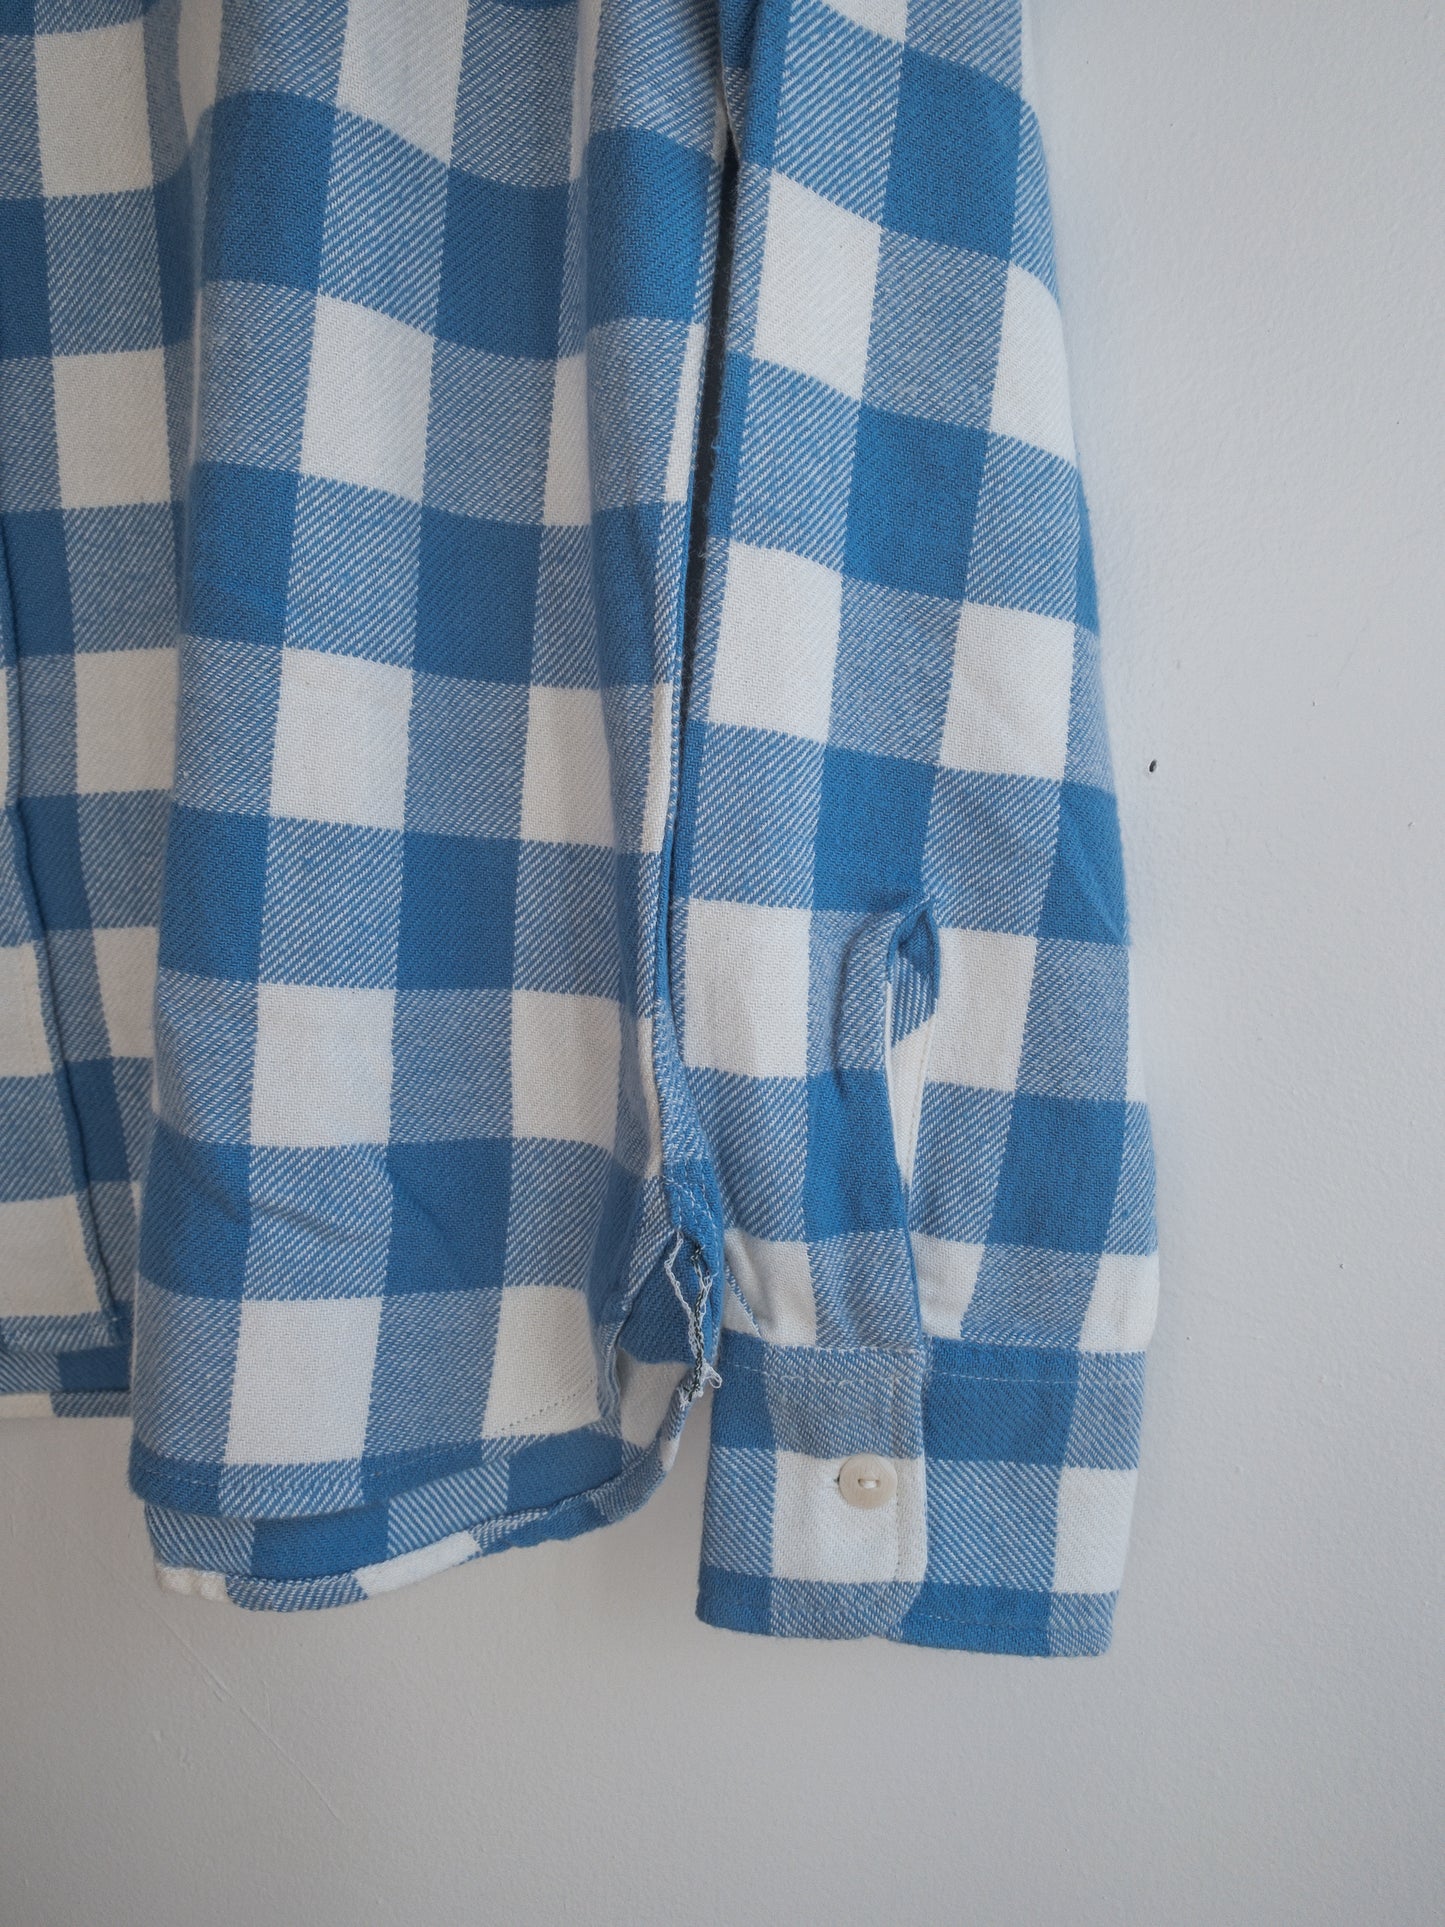 Washed Flannel Workshirt - Ox Blue/Cream Buffalo Plaid